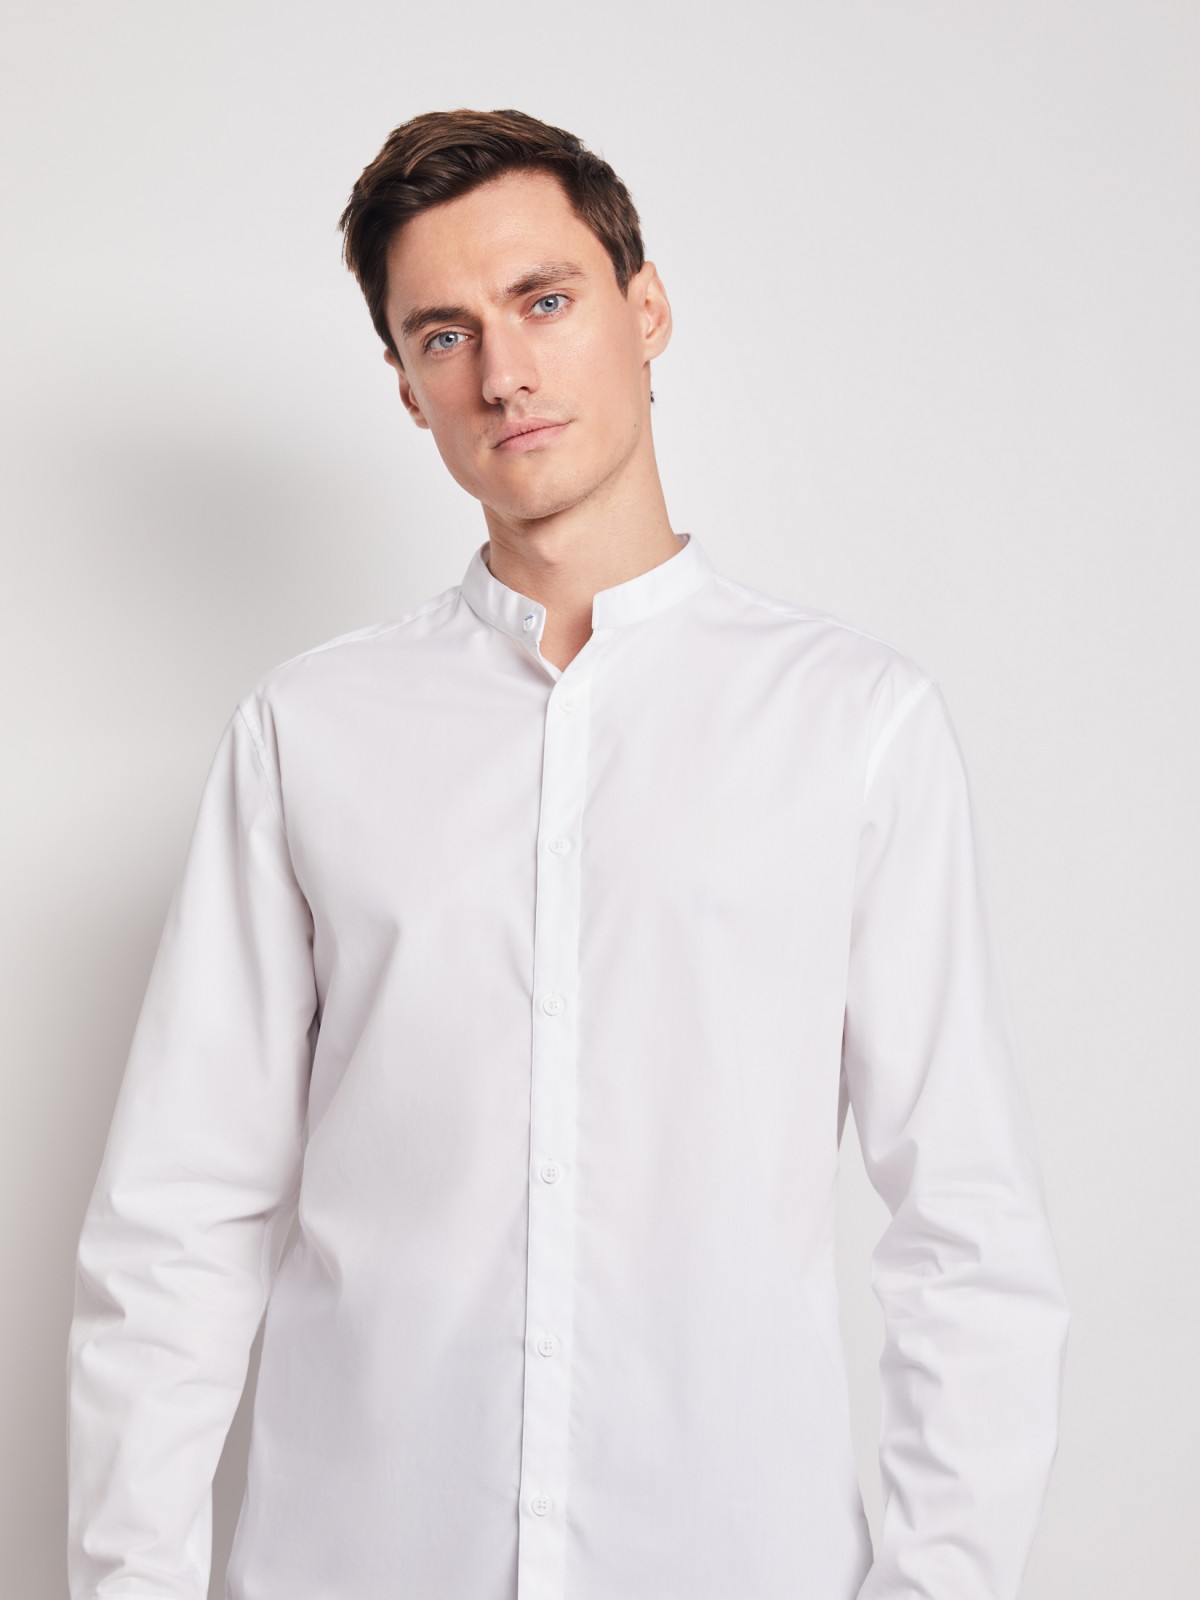 Рубашка с воротником-стойкой zolla 212112159012, цвет белый, размер S - фото 4